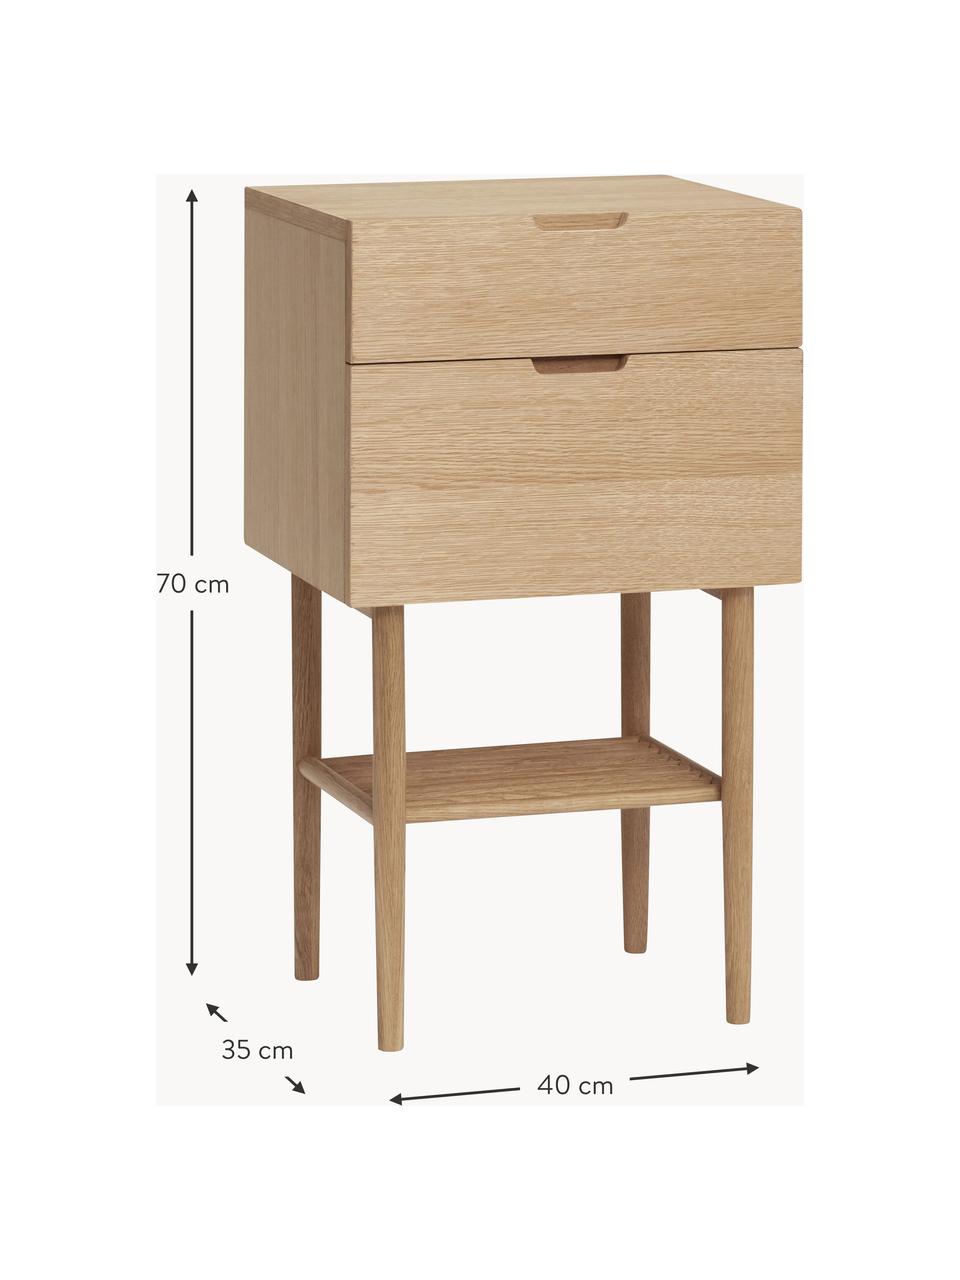 Dřevěný noční stolek Acorn, Dubová dýha, dubové dřevo

Tento produkt je vyroben z udržitelných zdrojů dřeva s certifikací FSC®., Dubové dřevo, Š 40 cm, V 70 cm